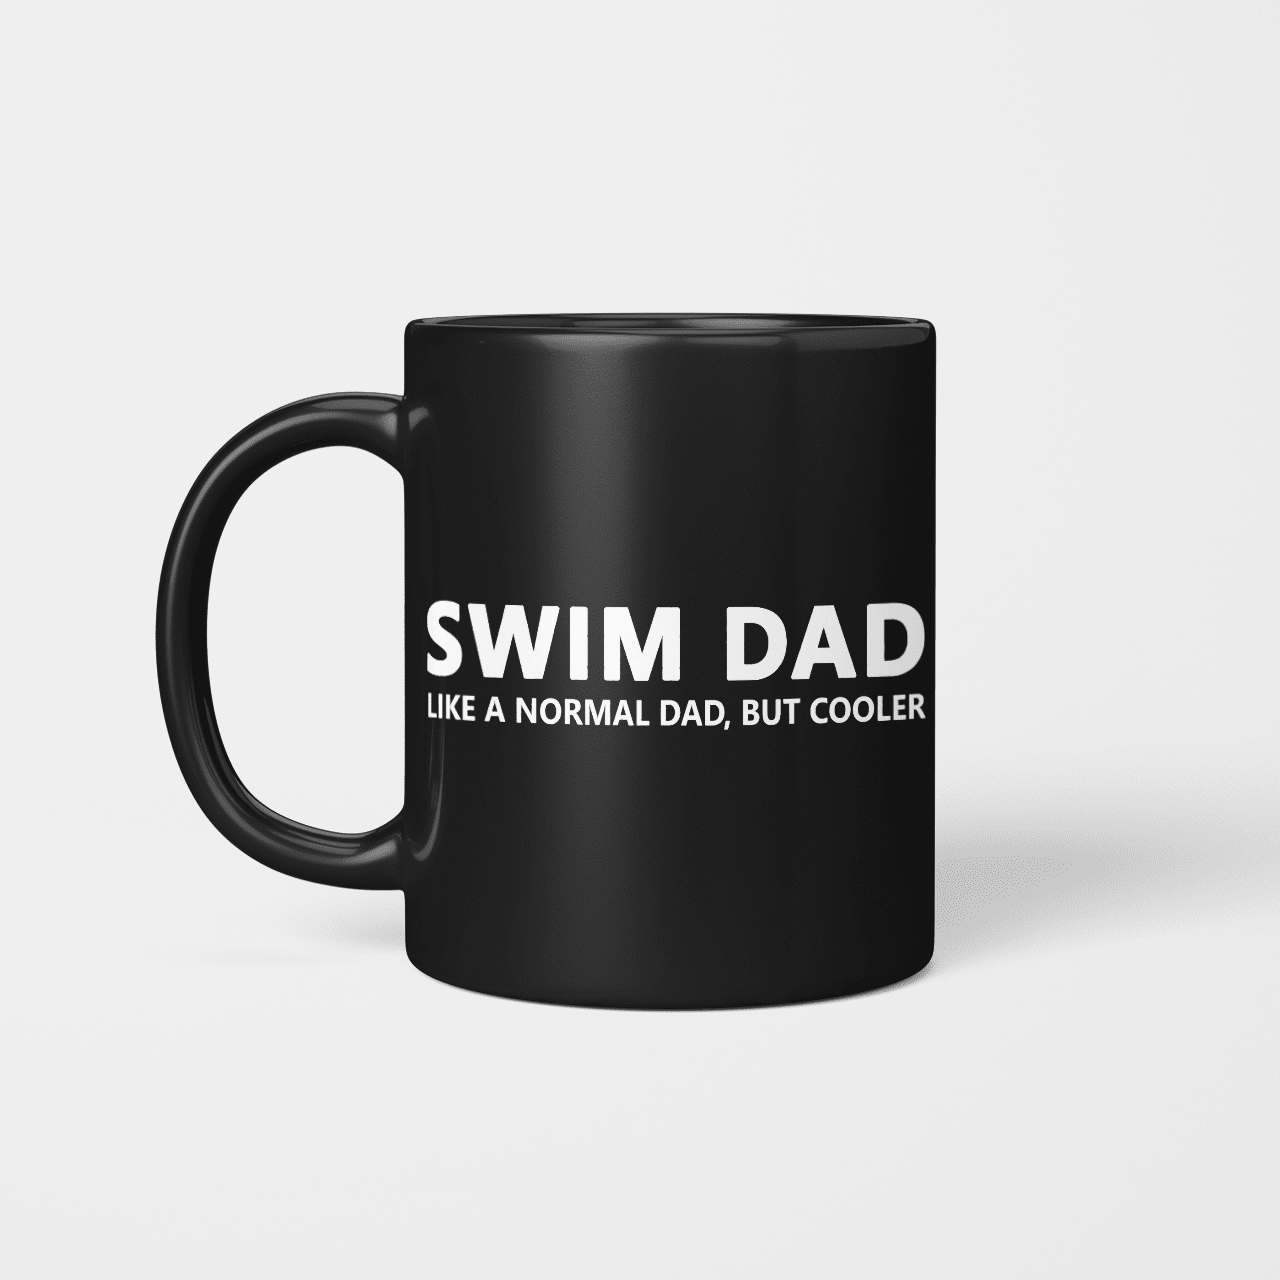 Swim Dad Swm2322